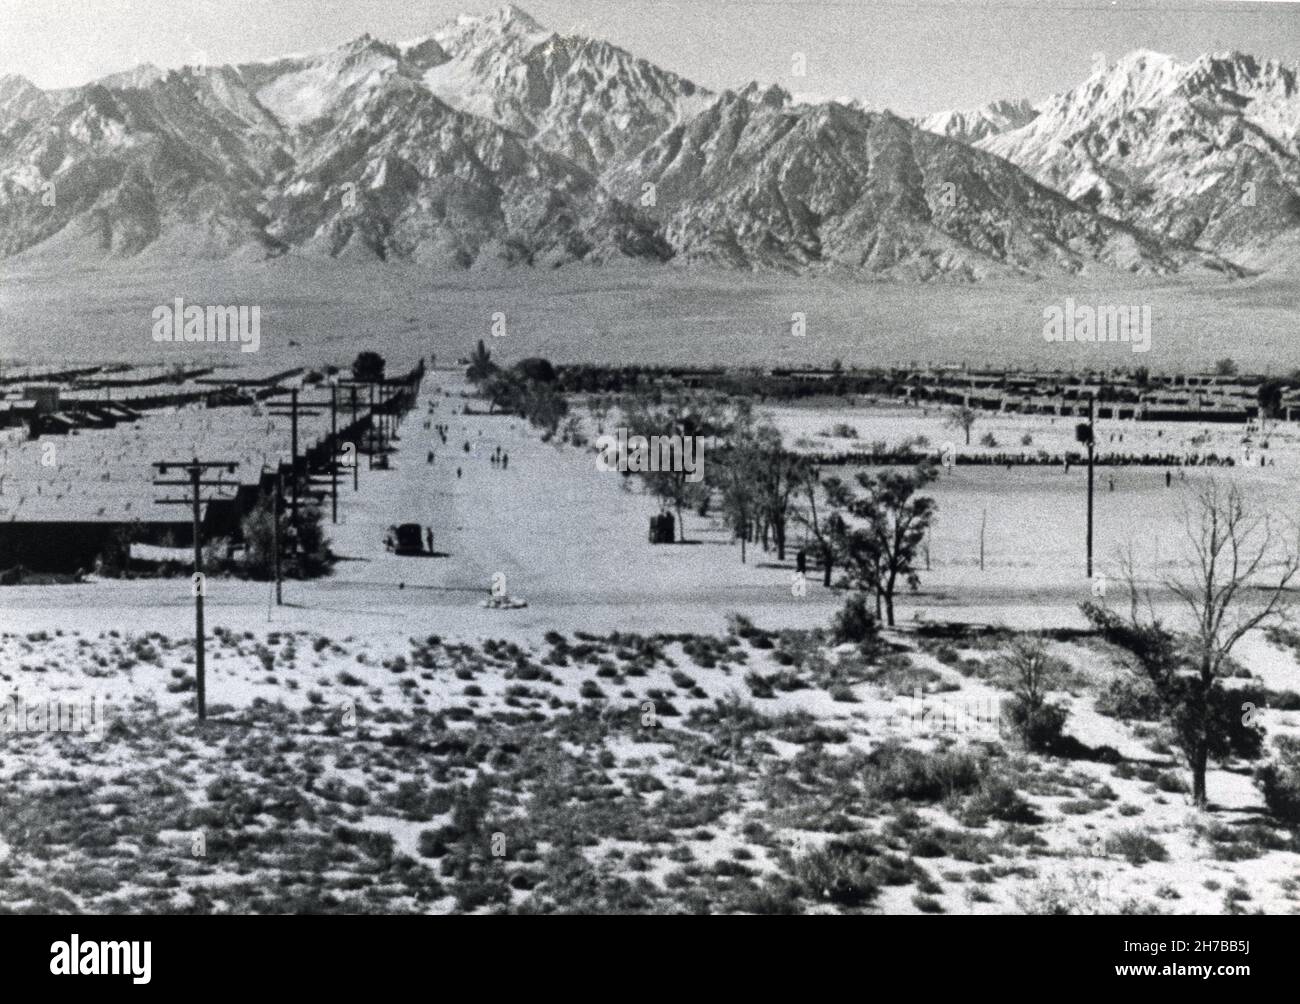 Foto del campamento de internamiento japonés de la Segunda Guerra Mundial en Manzanar, en Owens Valley, California, fotografiada por el fotógrafo norteamericano Ansel Adams. En “Nacido libre e igual” Ansel Adams describió a Manzanar como una “ciudad construida de chozas y paciencia. Foto de stock